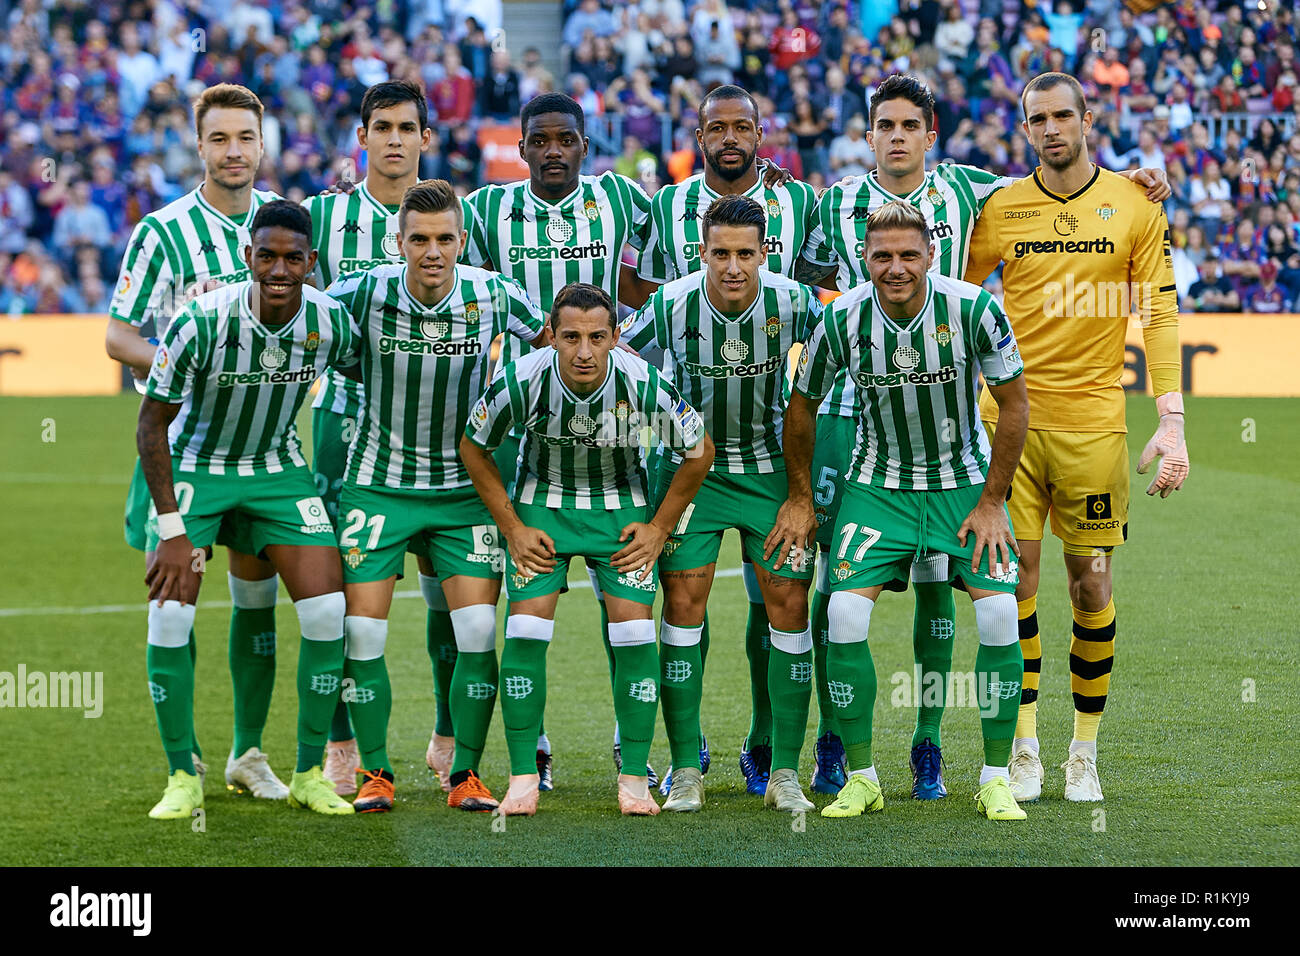 BARCELONA, España - 11 de noviembre: Real Betis Balompie línea de